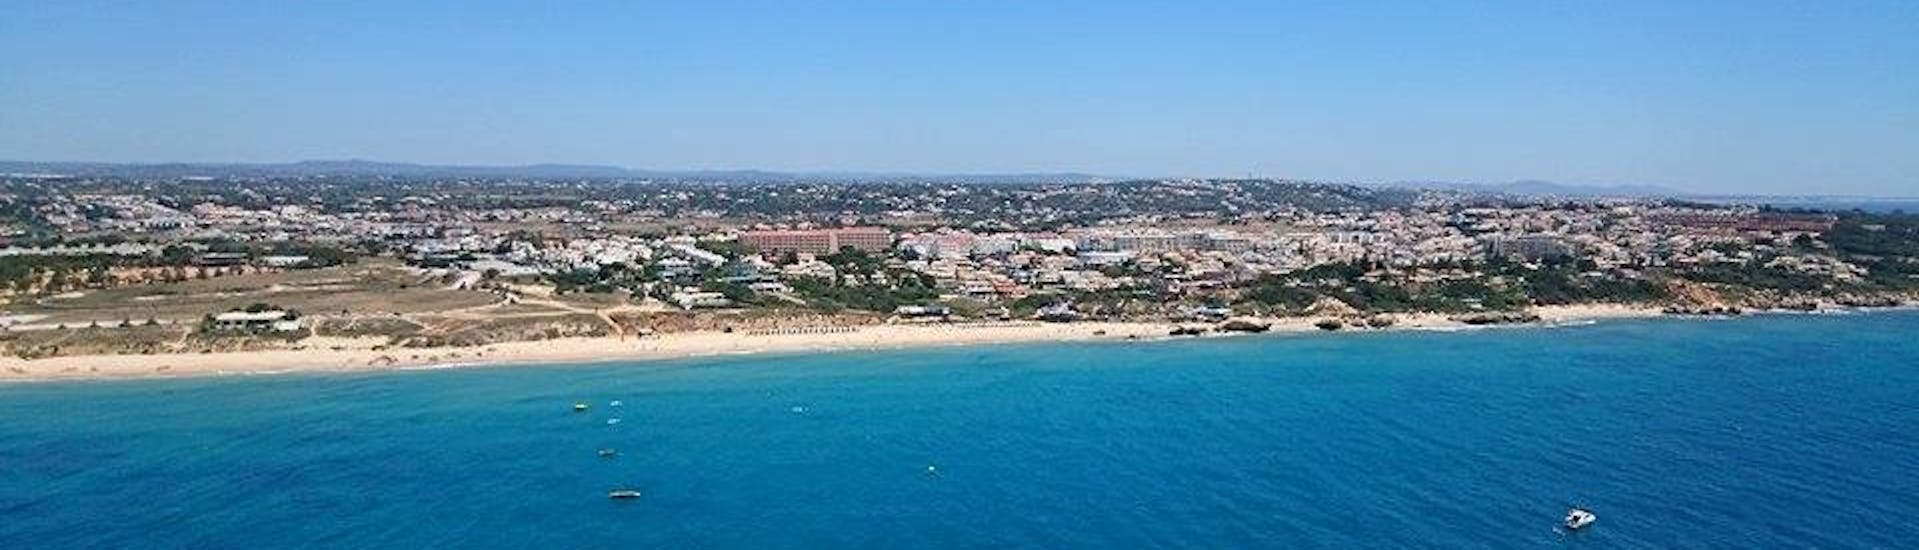 Die Algarveküste und der Strand von Albufeira aus der Vogelperspektive, die die Teilnehmer beim Kayaking am Galé-Strand in Albufeira mit Nautifun Galé genießen können.